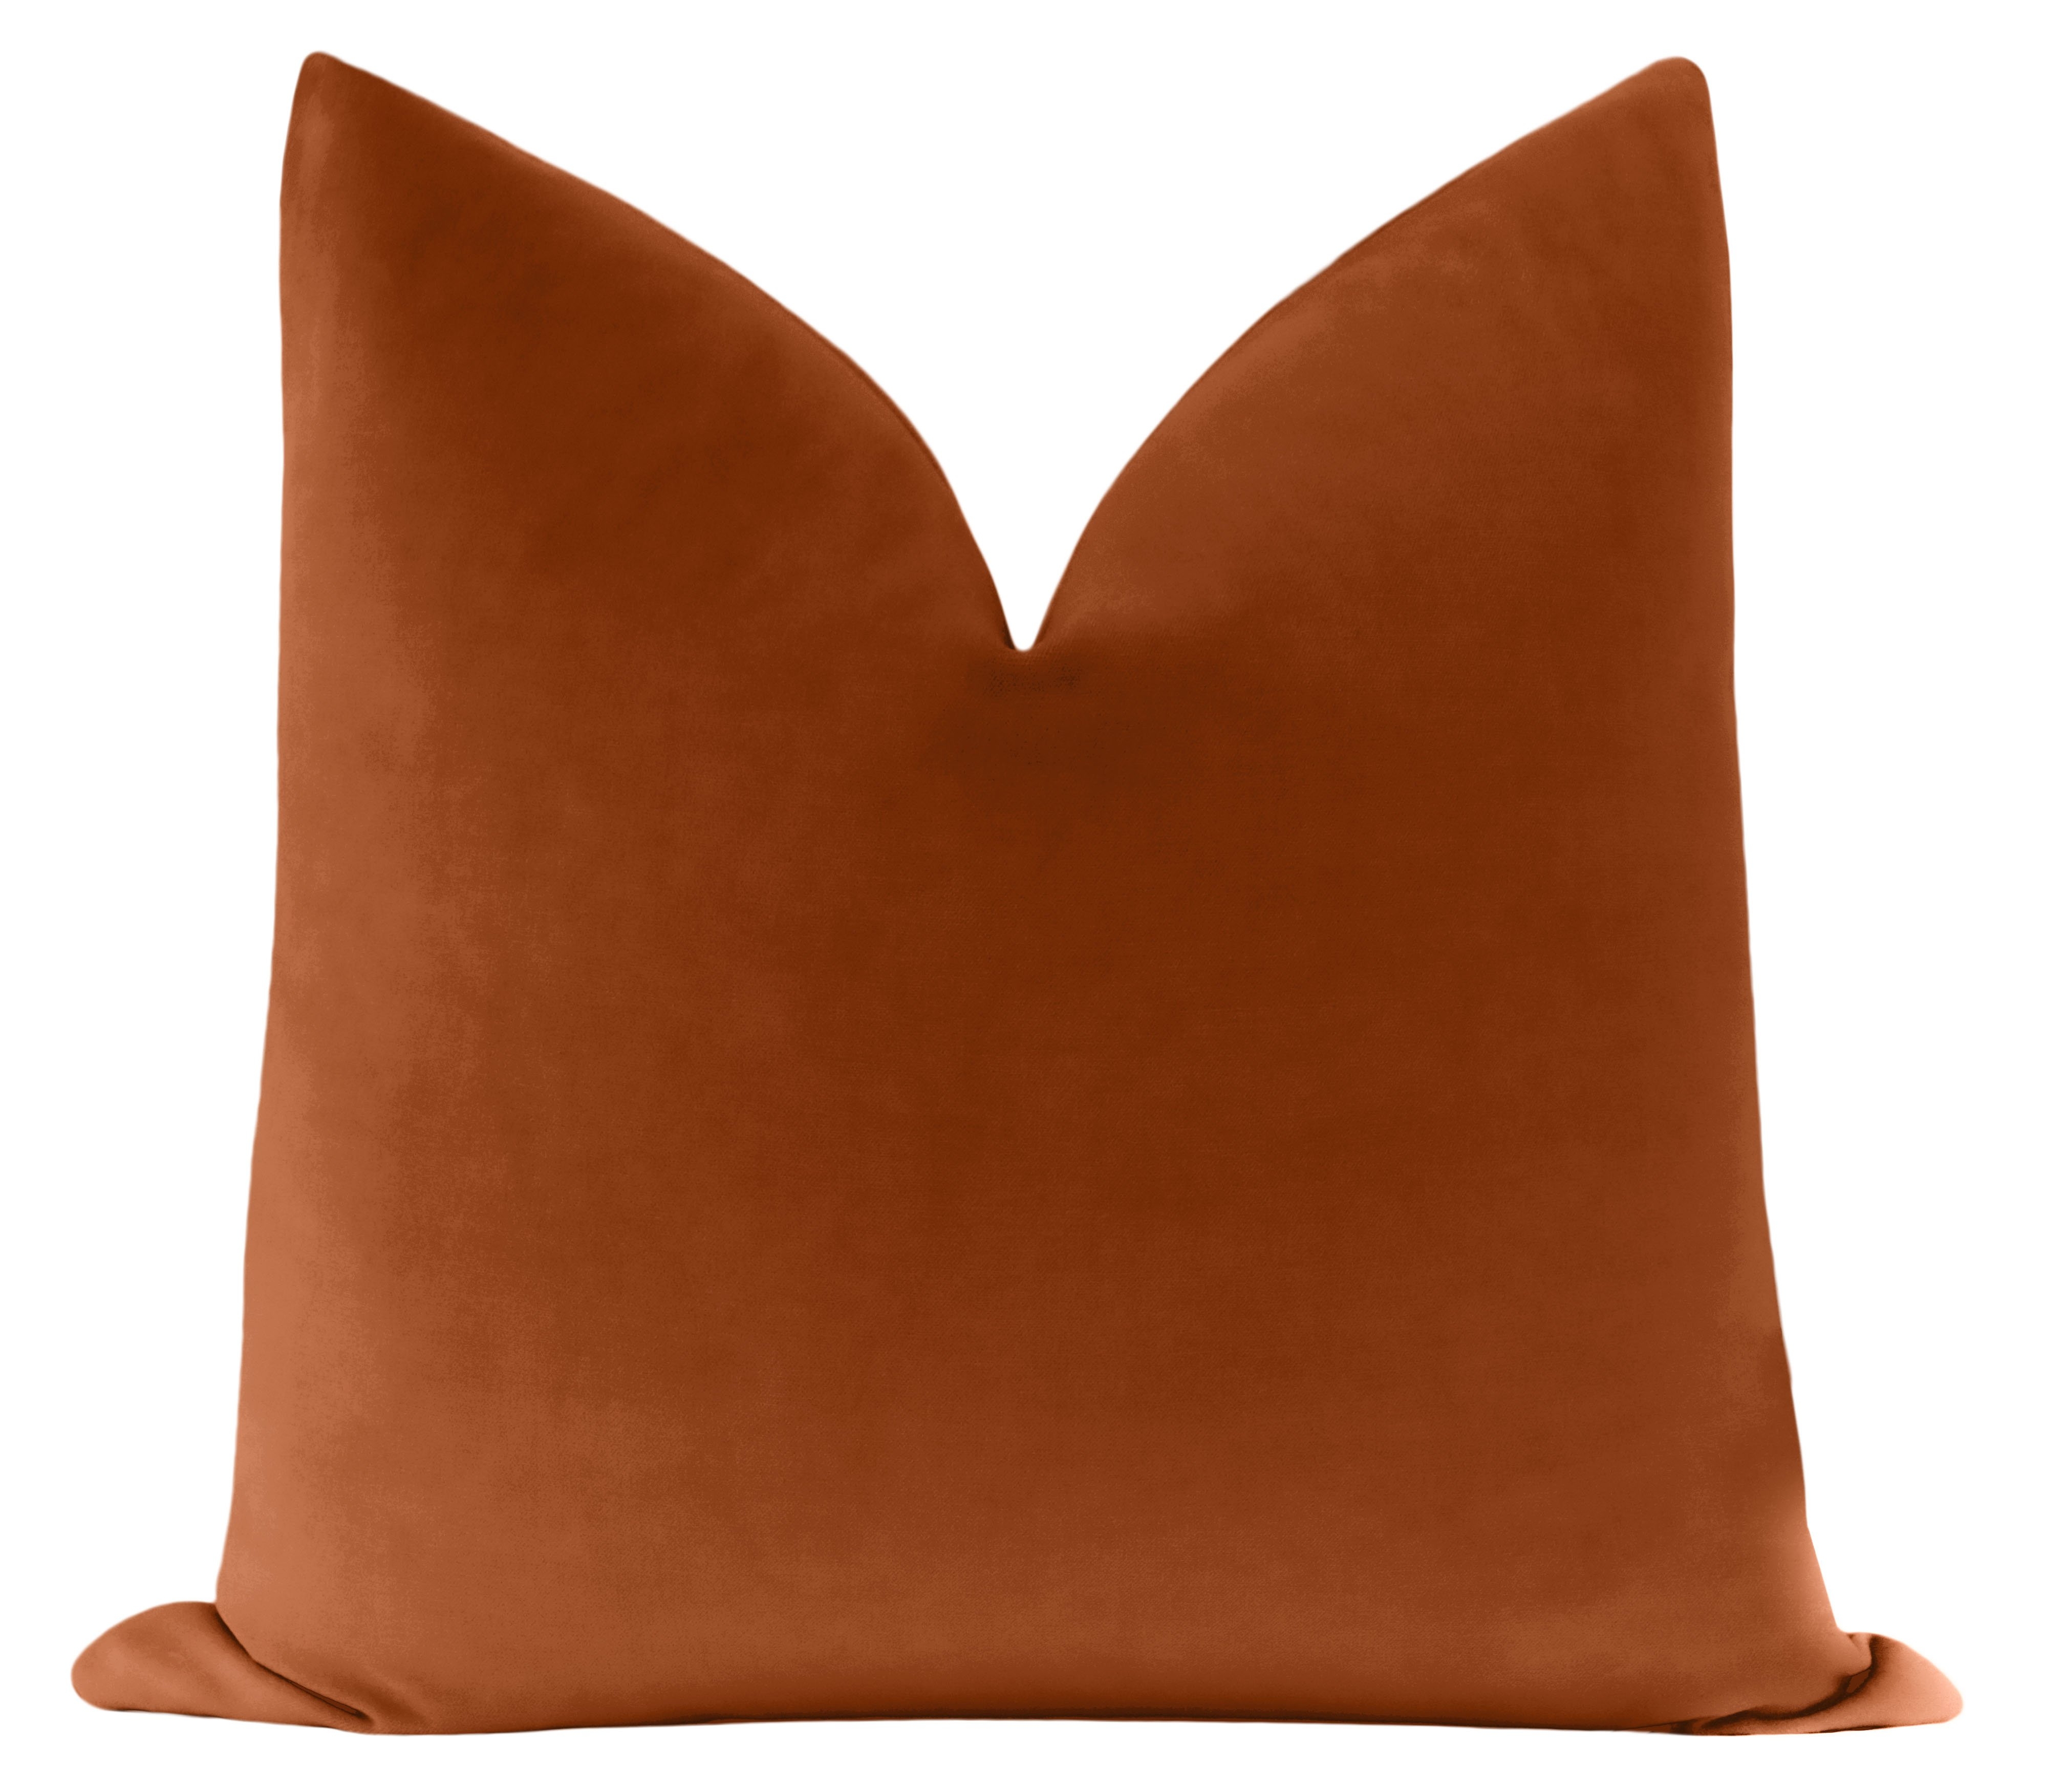 Classic Velvet Pillow Cover, Terracotta, 20" x 20" - Image 0